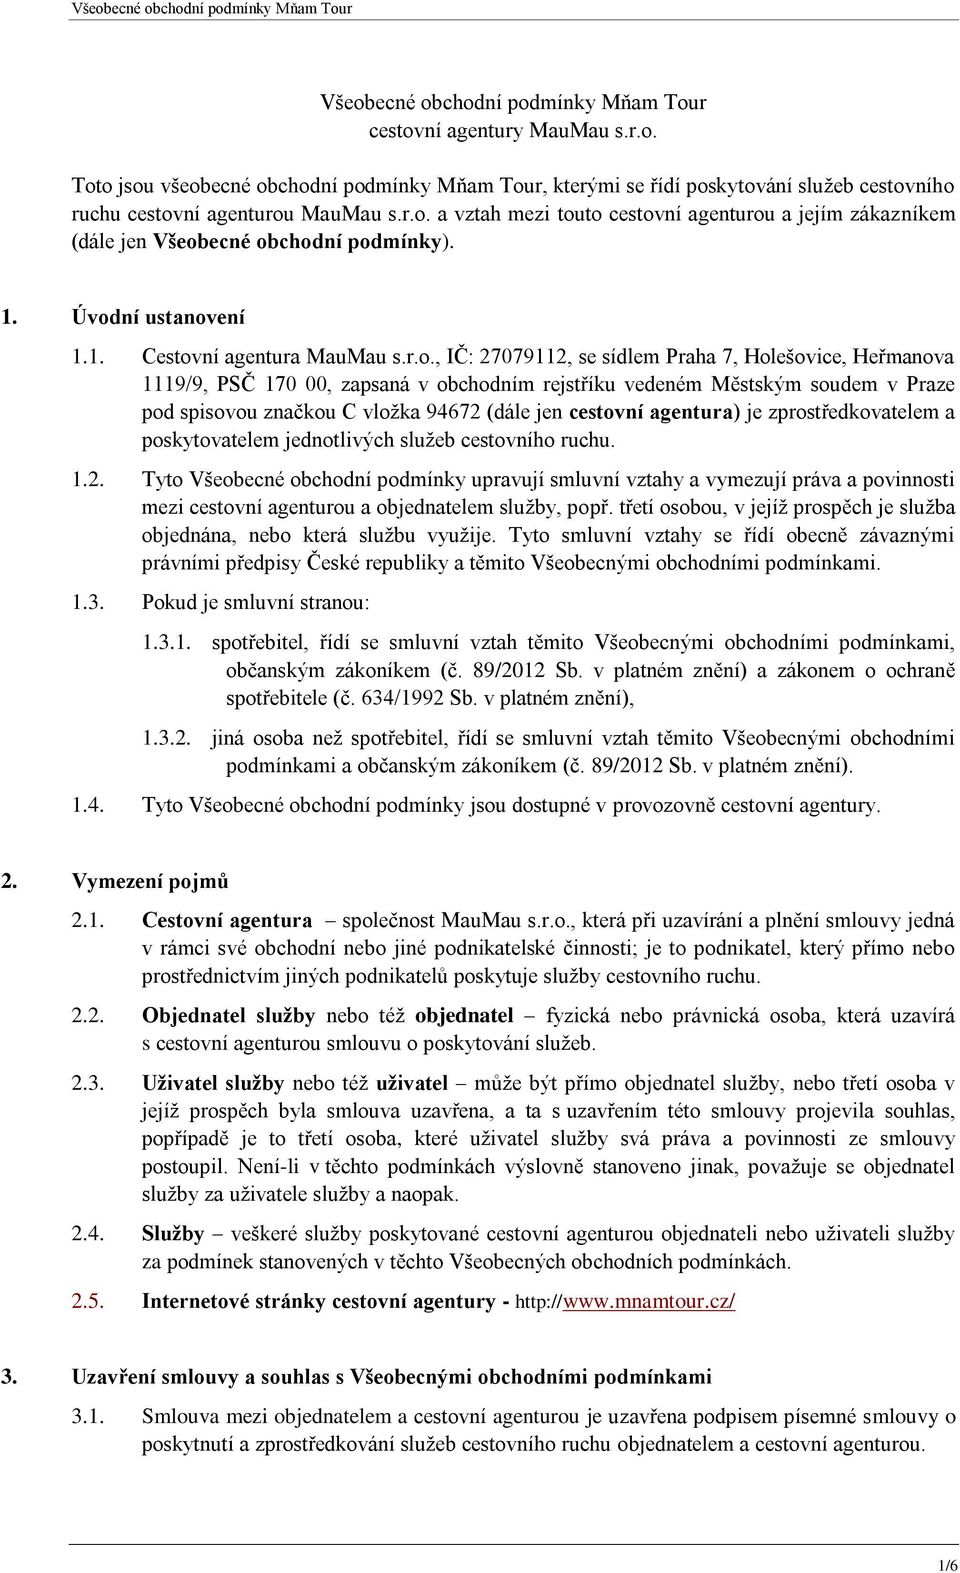 Holešovice, Heřmanova 1119/9, PSČ 170 00, zapsaná v obchodním rejstříku vedeném Městským soudem v Praze pod spisovou značkou C vložka 94672 (dále jen cestovní agentura) je zprostředkovatelem a